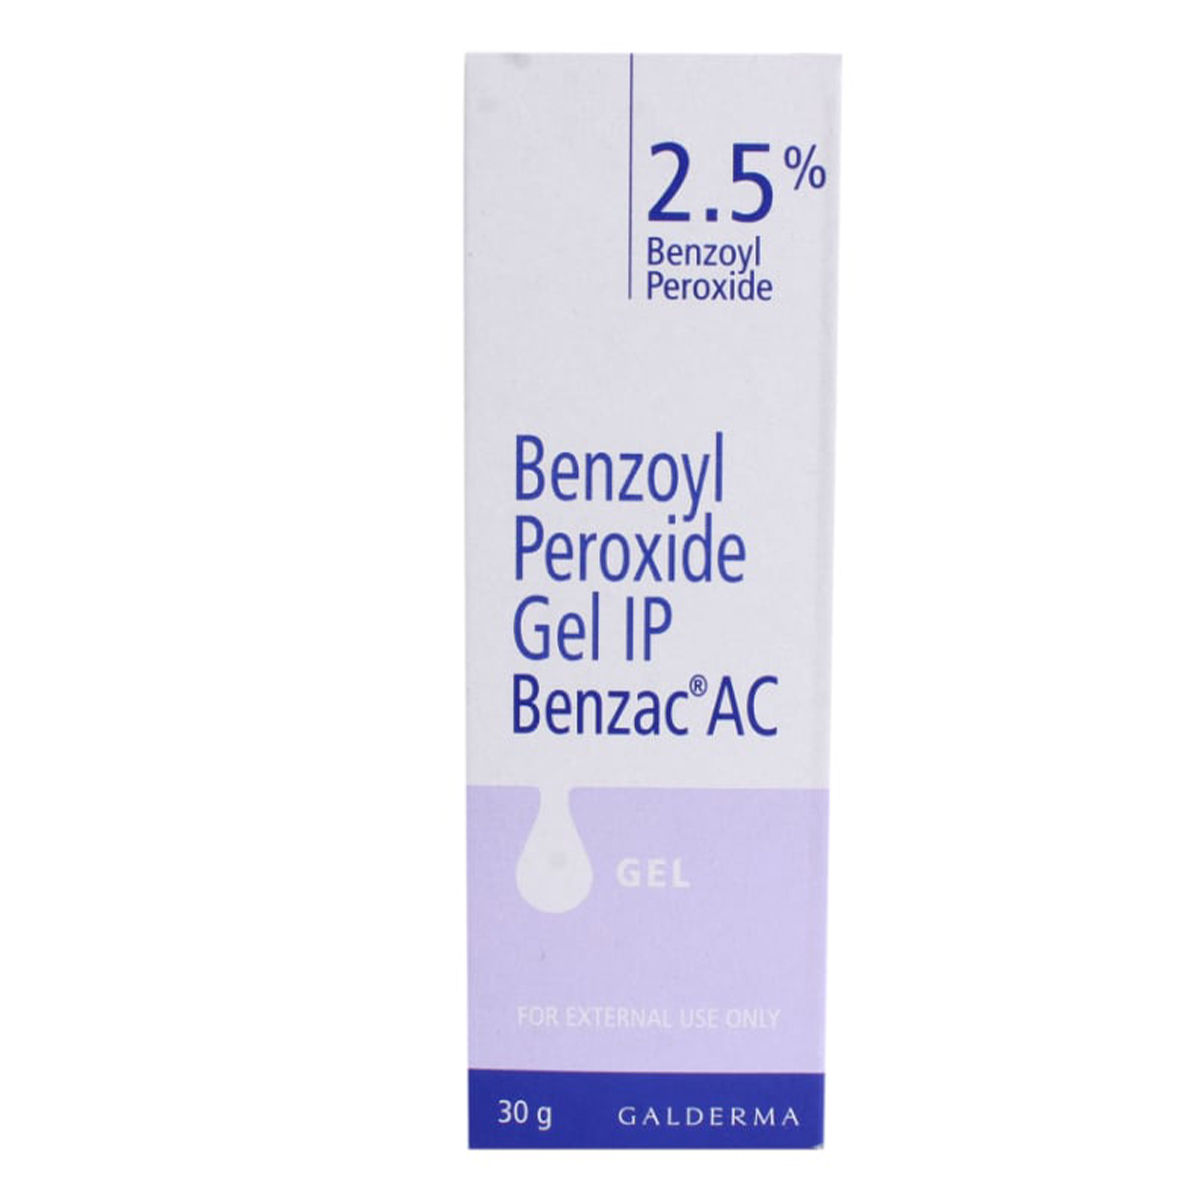 Buy Benzac AC 2.5% Gel 30 gm Online